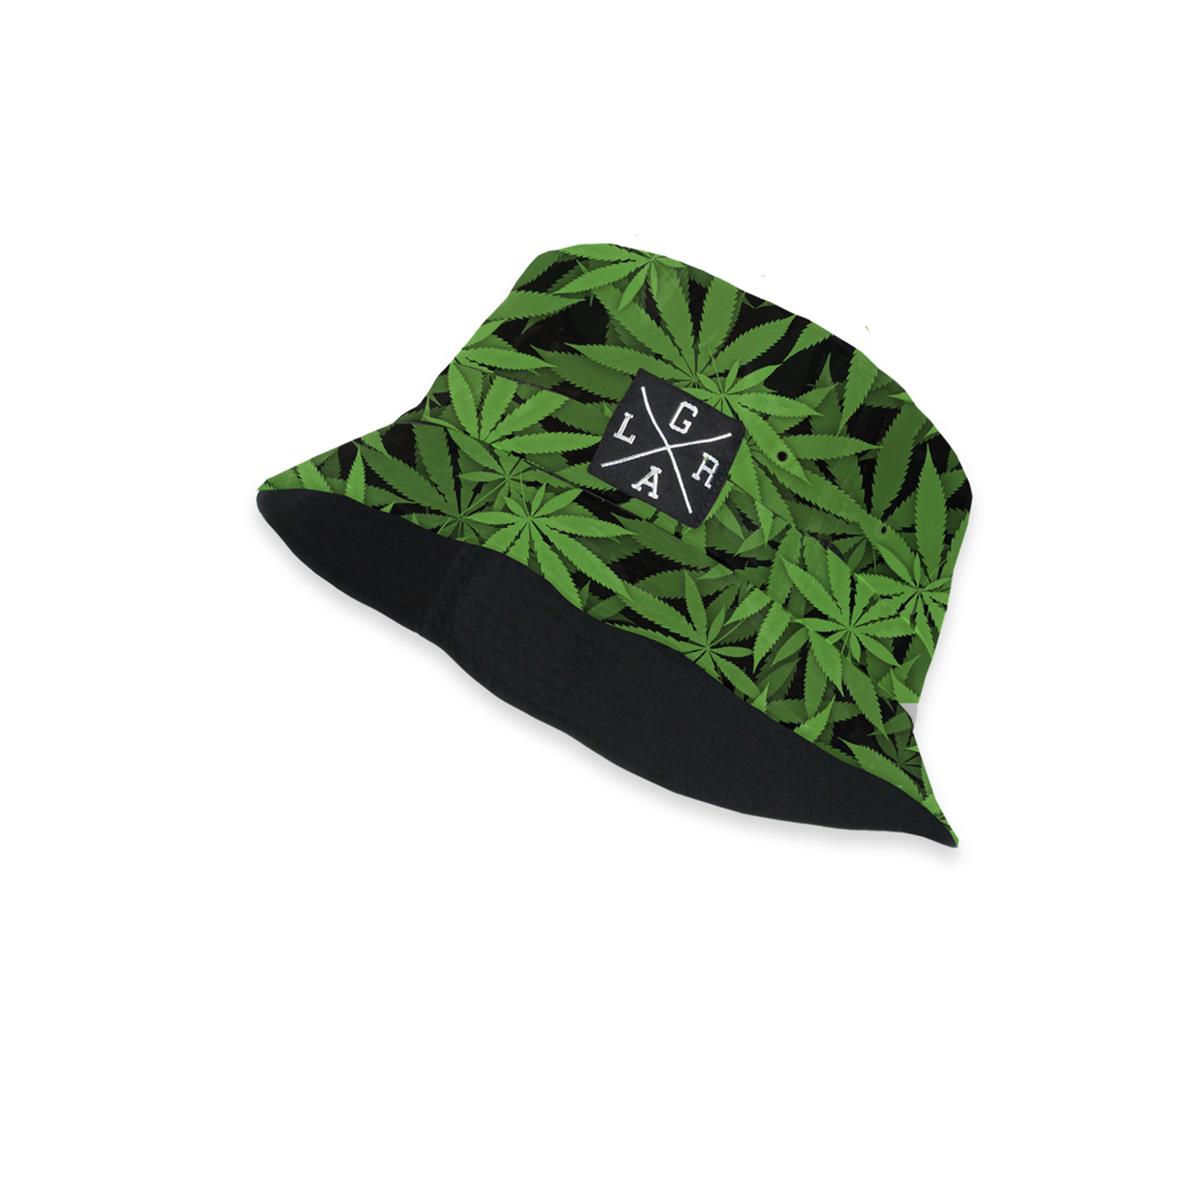 Loose Riders Cap/Hat  420 - Green/Black